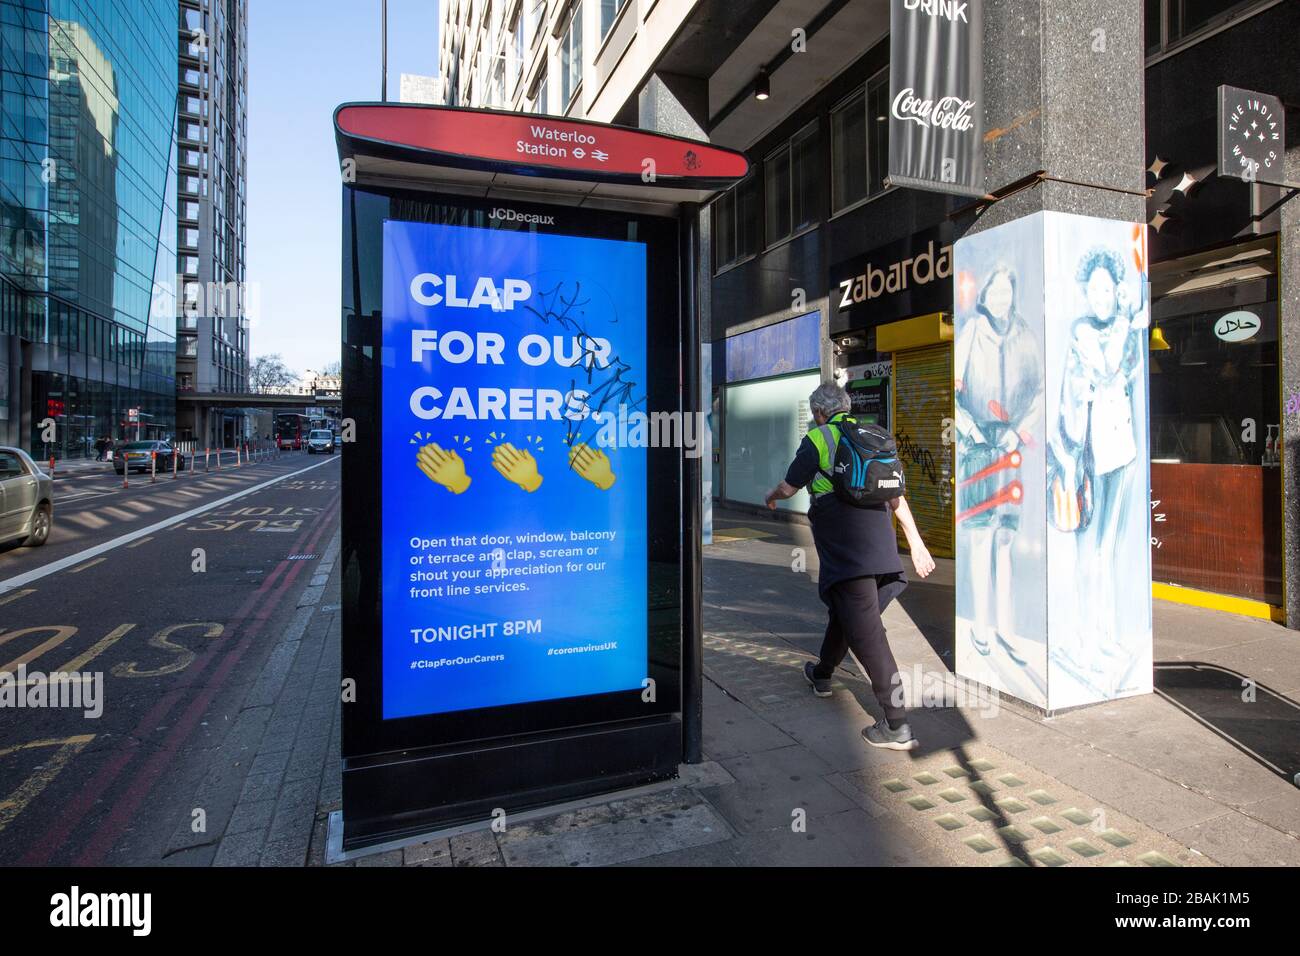 Clap per i nostri Carers pubblicizzato presso una fermata dell'autobus nel centro di Londra per incoraggiare la gente a mostrare gratitudine ai lavoratori NHS sulla linea frontale del coronavirus Foto Stock